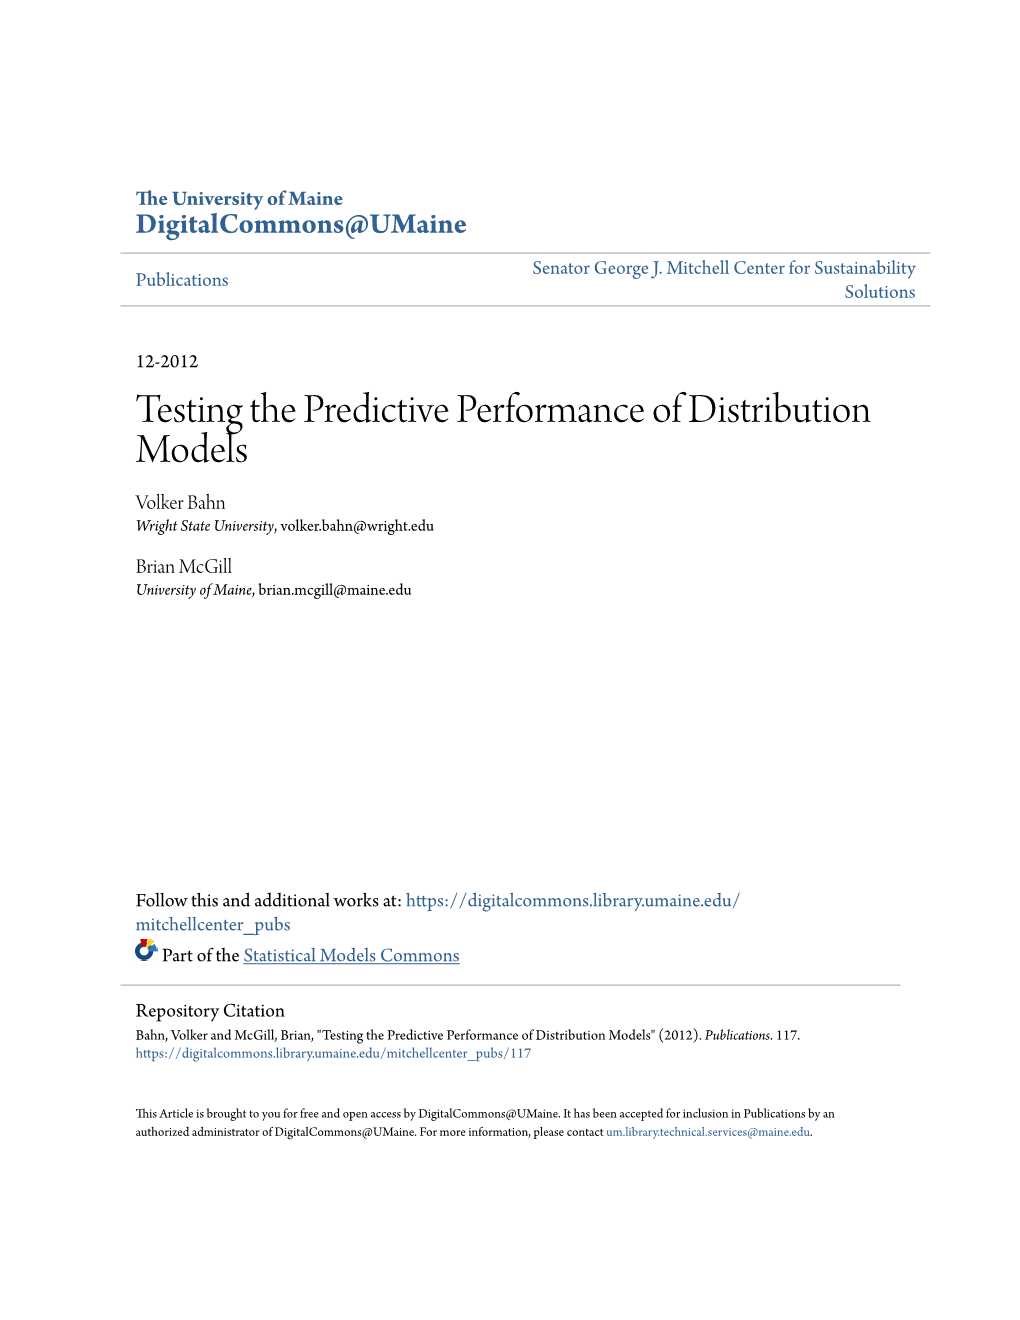 Testing the Predictive Performance of Distribution Models Volker Bahn Wright State University, Volker.Bahn@Wright.Edu